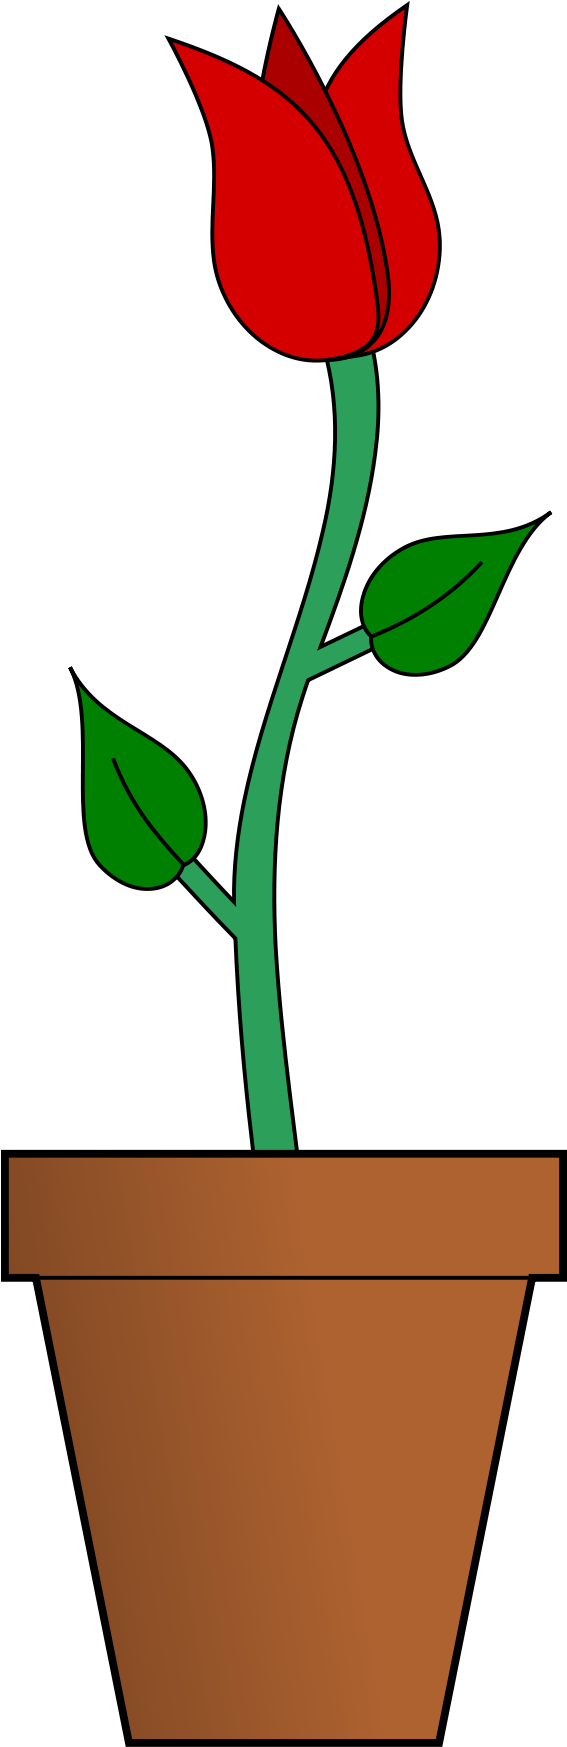 Open - Flower Vase In Cartoon (2000x2000)